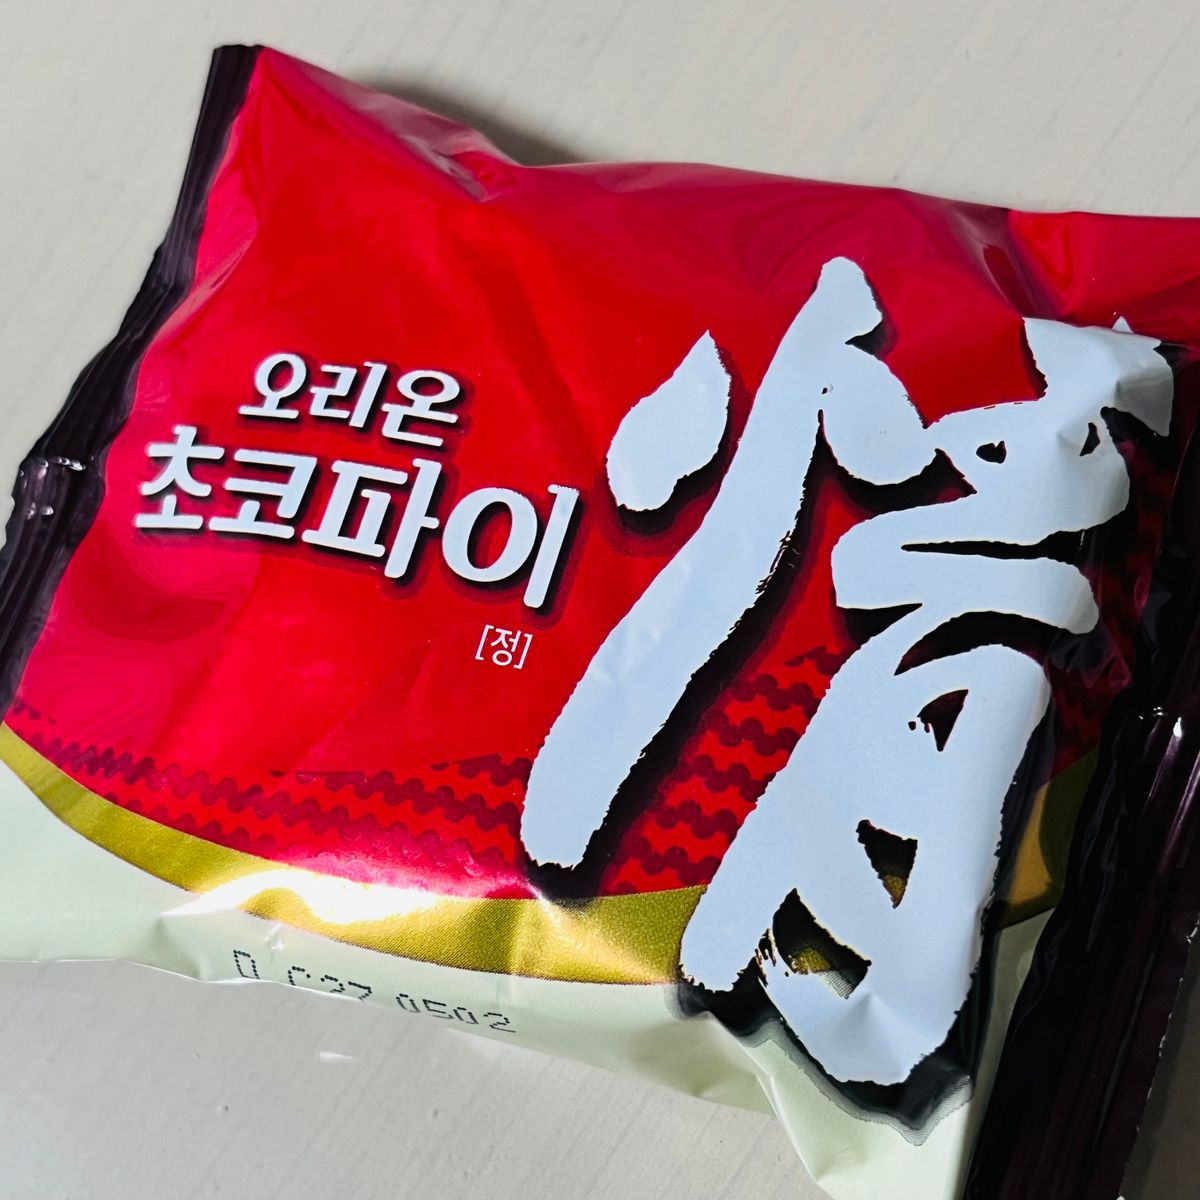 韓国旅行のお土産 韓国で有名なチョコパイ「情」は、お味の方は日本製が勝るかな😅